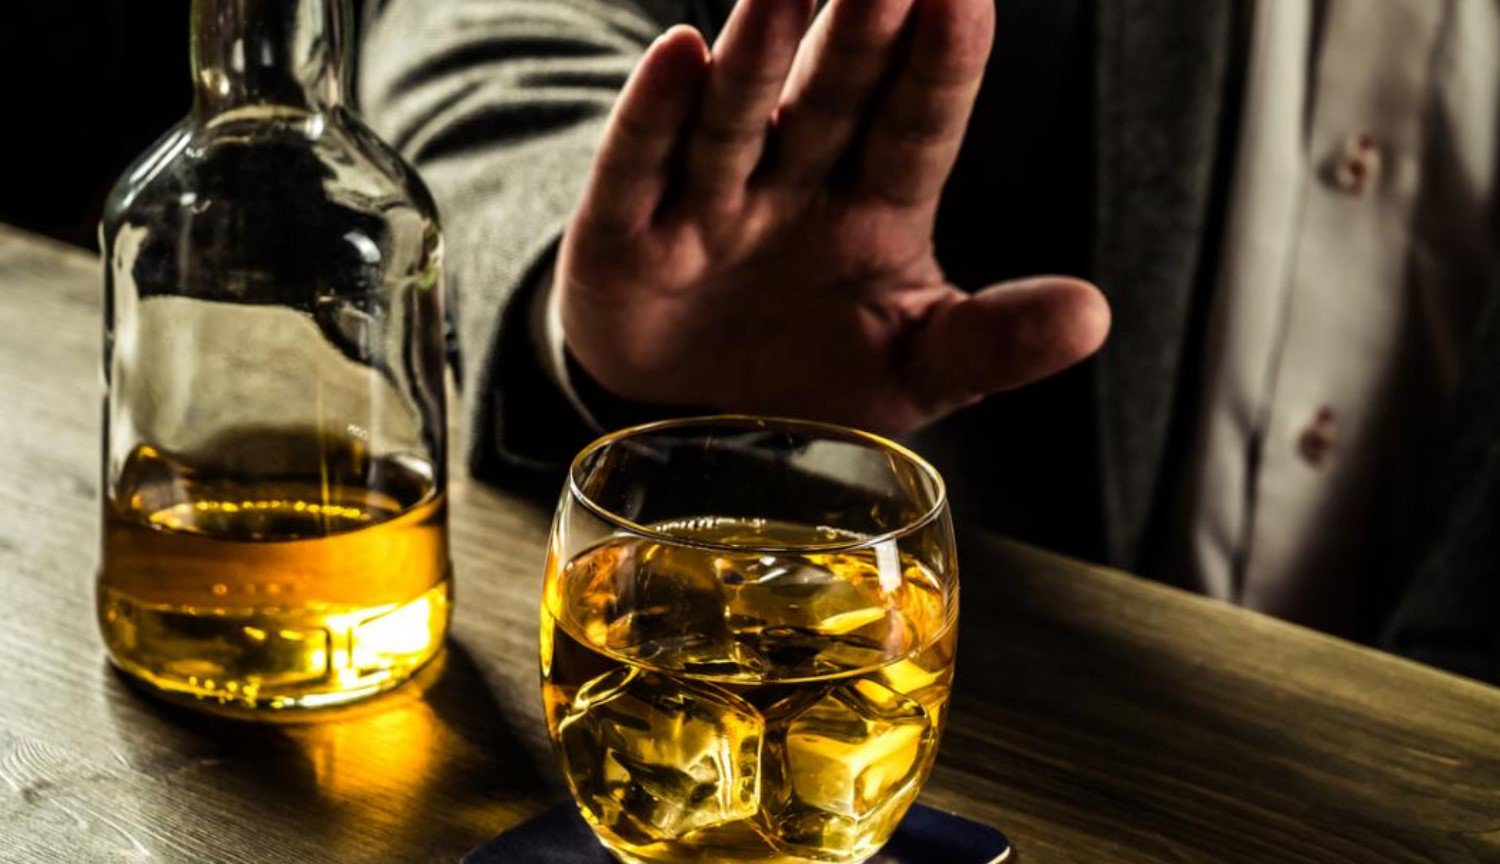 Os cientistas sugerem tratar o alcoolismo com o auxílio de laser, estimulação do cérebro